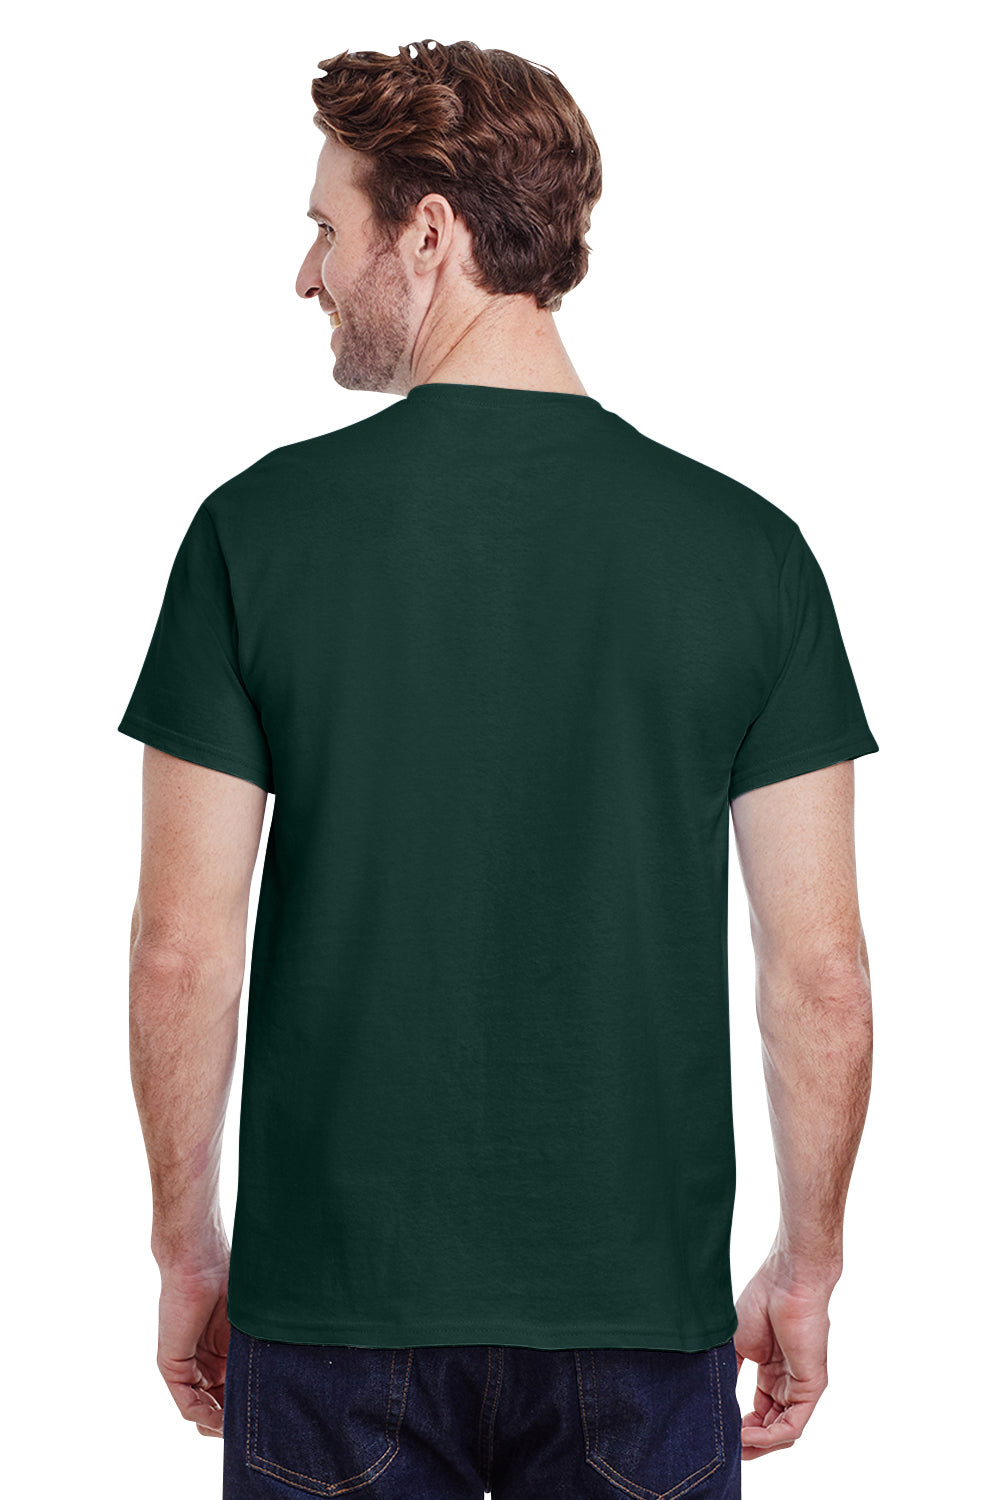 Gildan G200 Mens Ultra Short Sleeve Crewneck T-Shirt Forest Green Back